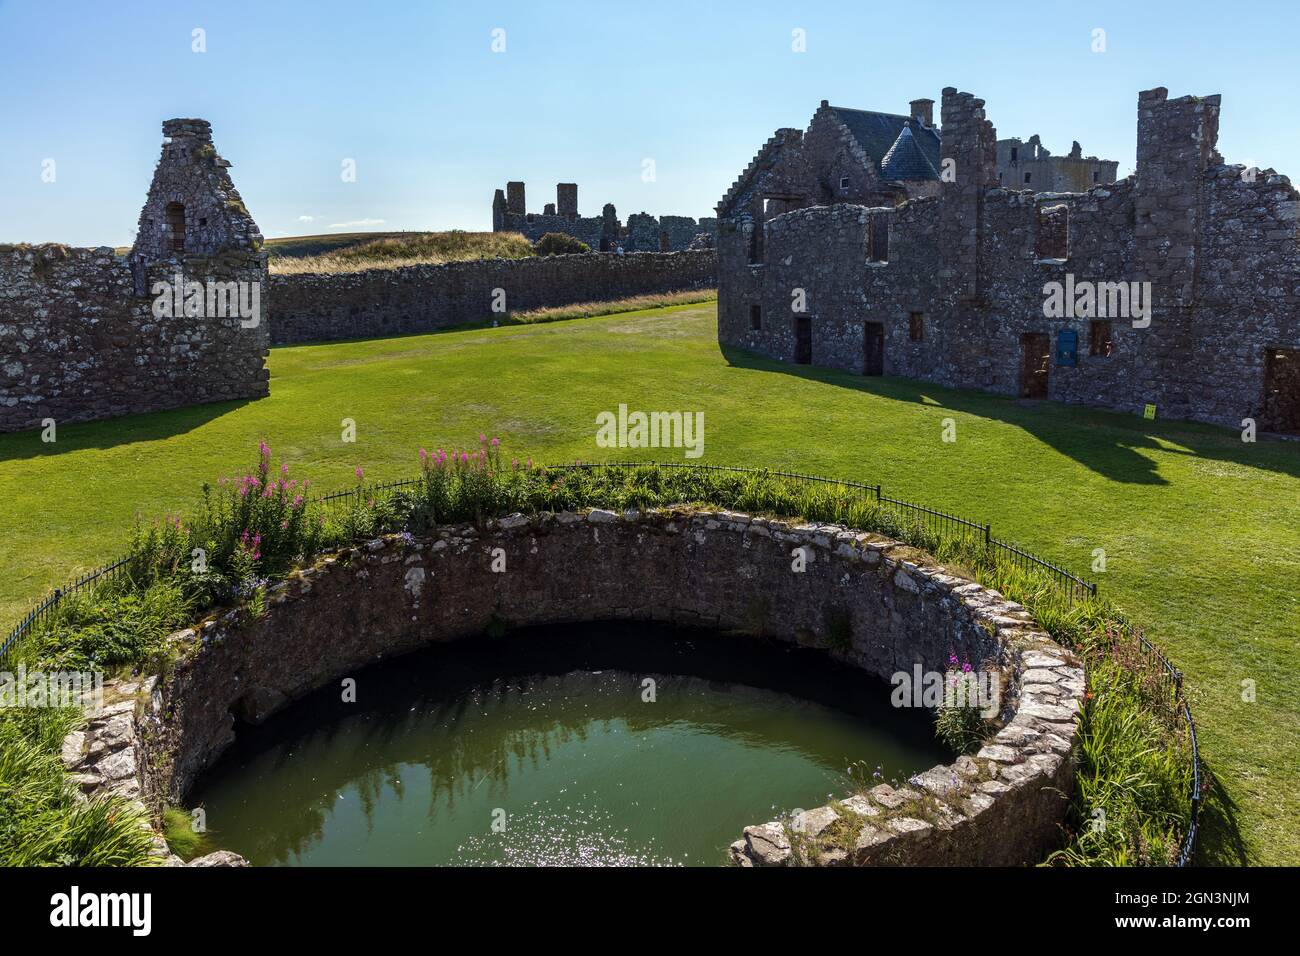 Vestiges de la forteresse médiévale, le château de Dunnottar, situé sur un promontoire rocheux sur la côte nord-est de l'Écosse, près de Stonehaven, Aberdeenshire. Banque D'Images